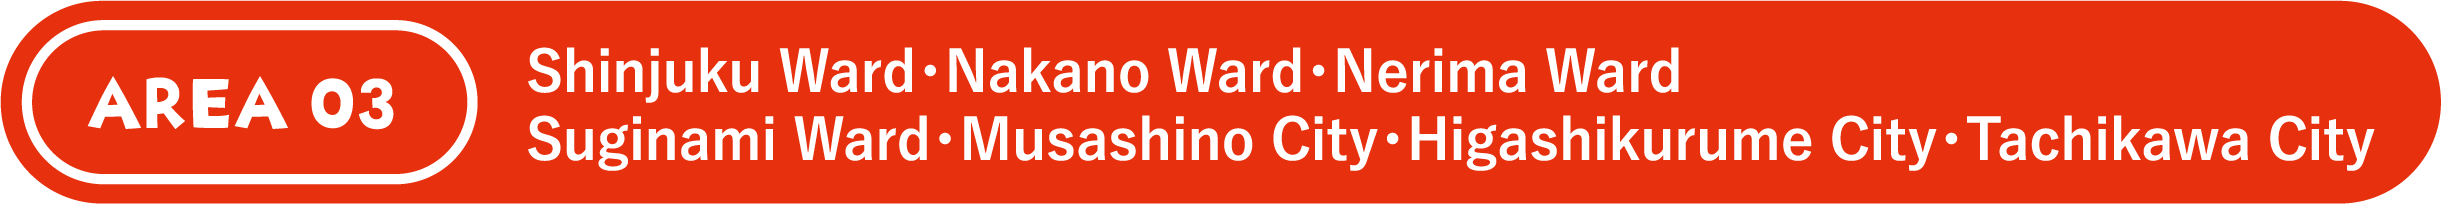 Shinjuku Ward・Nakano Ward・Nerima Ward・Suginami Ward・Musashino City・Higashikurume City・Tachikawa City